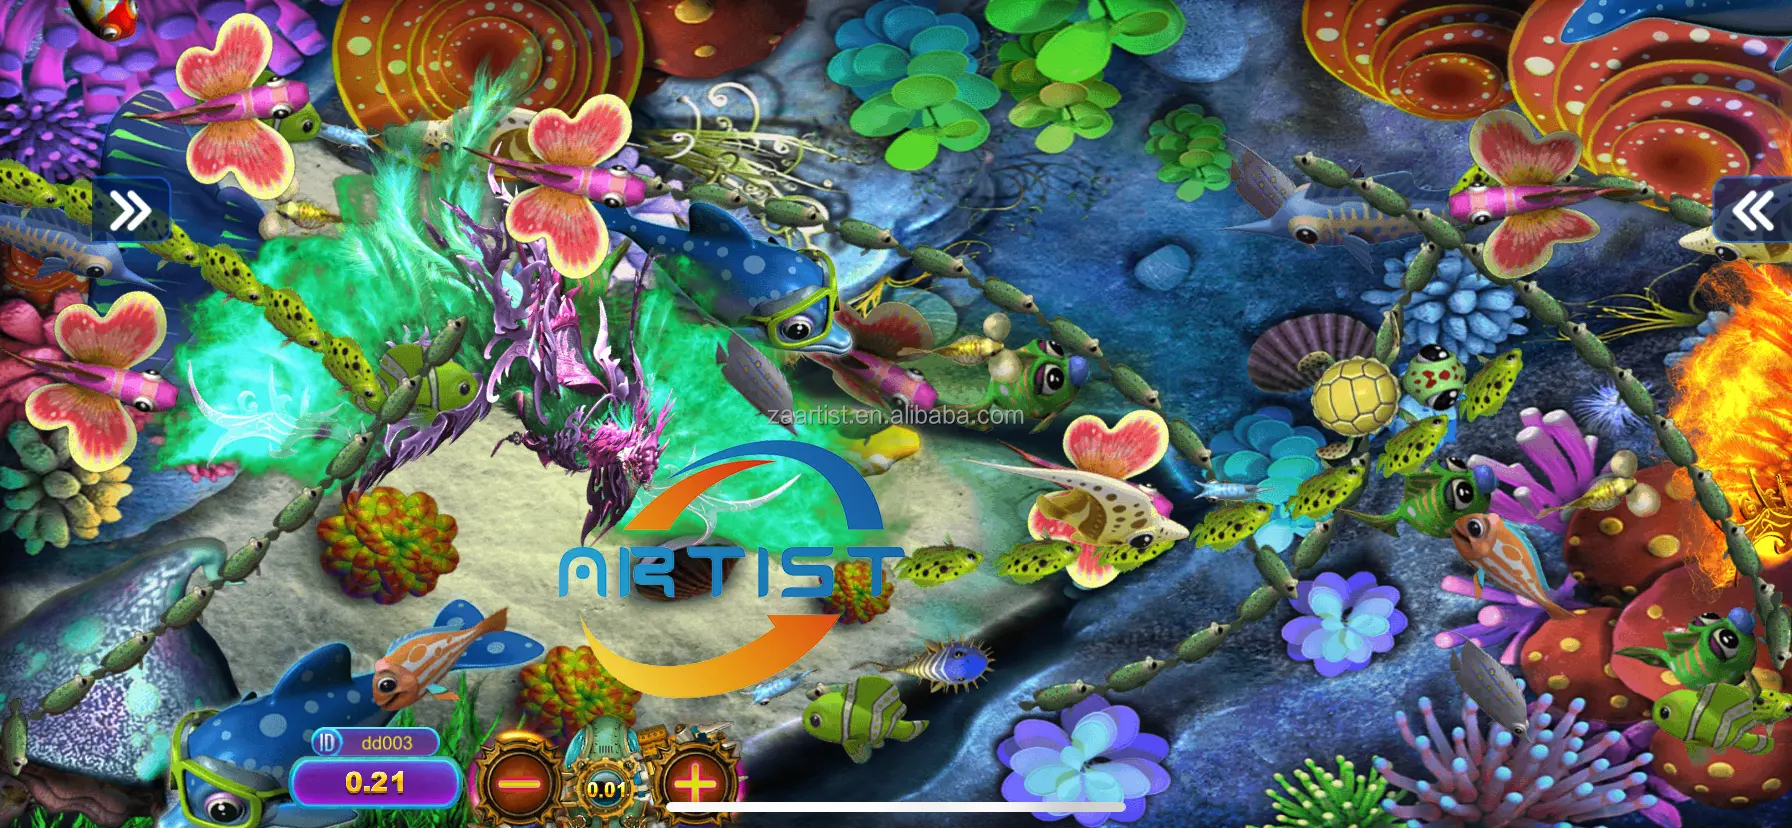 En iyi platform asil Arcade oyun odası altın ejderha distribütörü beceri oyunu kral Pop özelleştirilmiş online balık masa oyunu